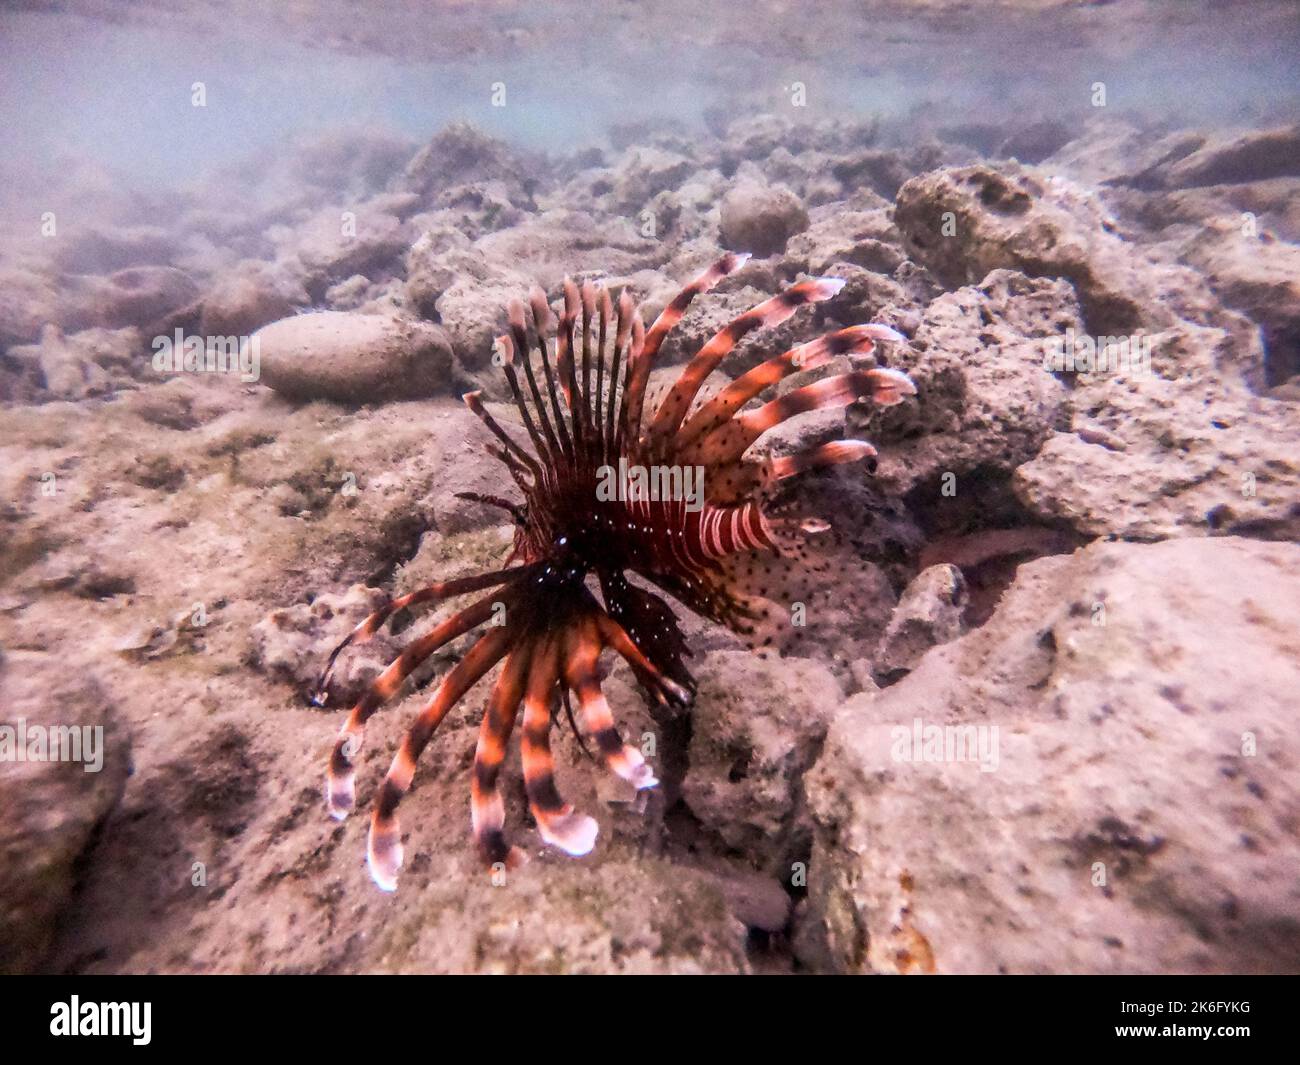 Le diable tropical exotique ou lionfish commun connu sous le nom de Pterois Miles sous l'eau au récif de corail. Vie sous-marine de récif avec coraux et tropica Banque D'Images